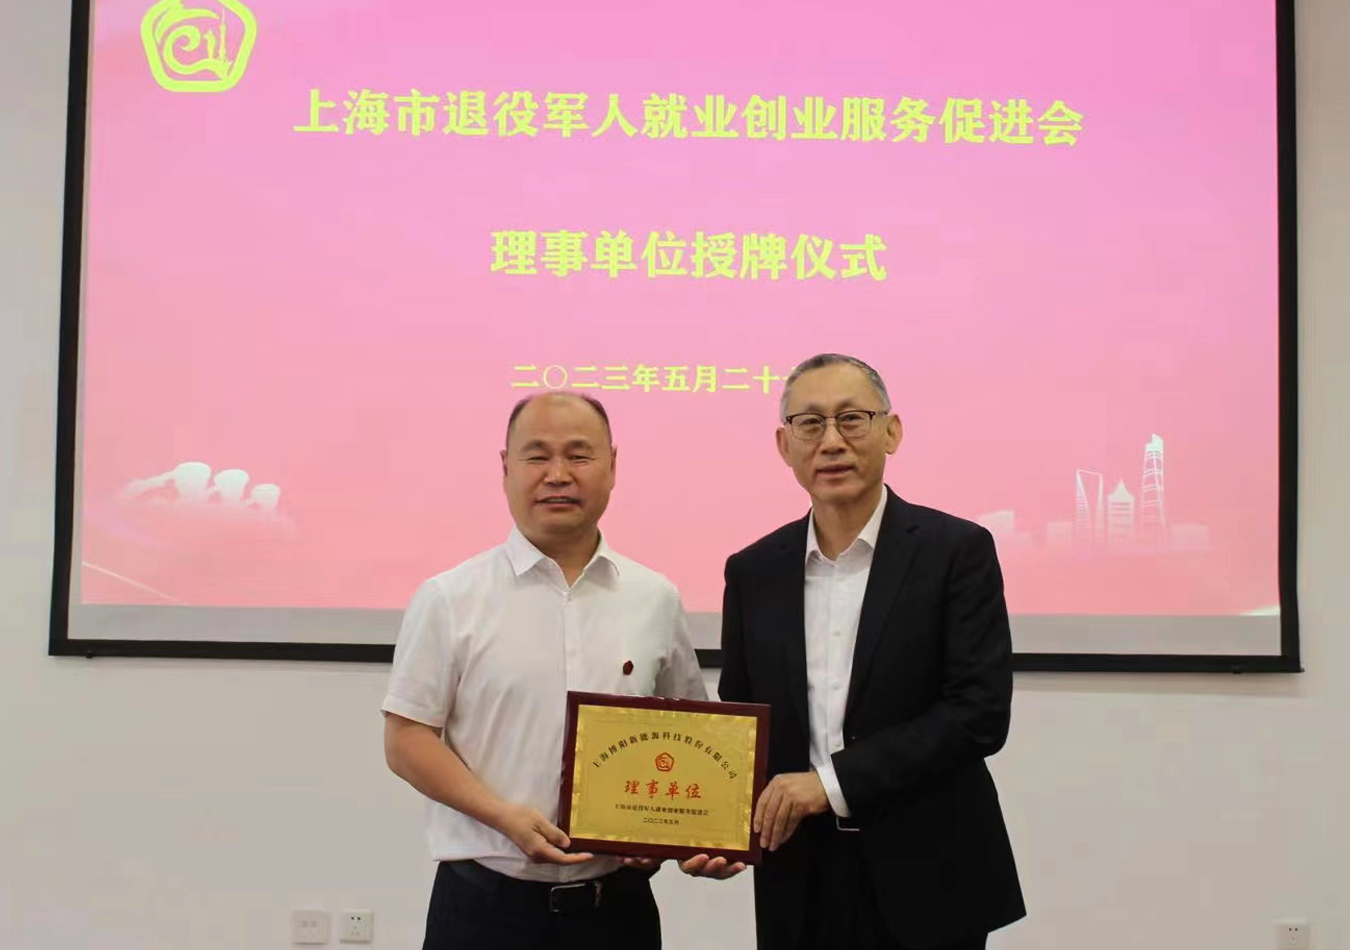 上海市退役军人就业创业服务促进会授予88805tccn新蒲京理事单位